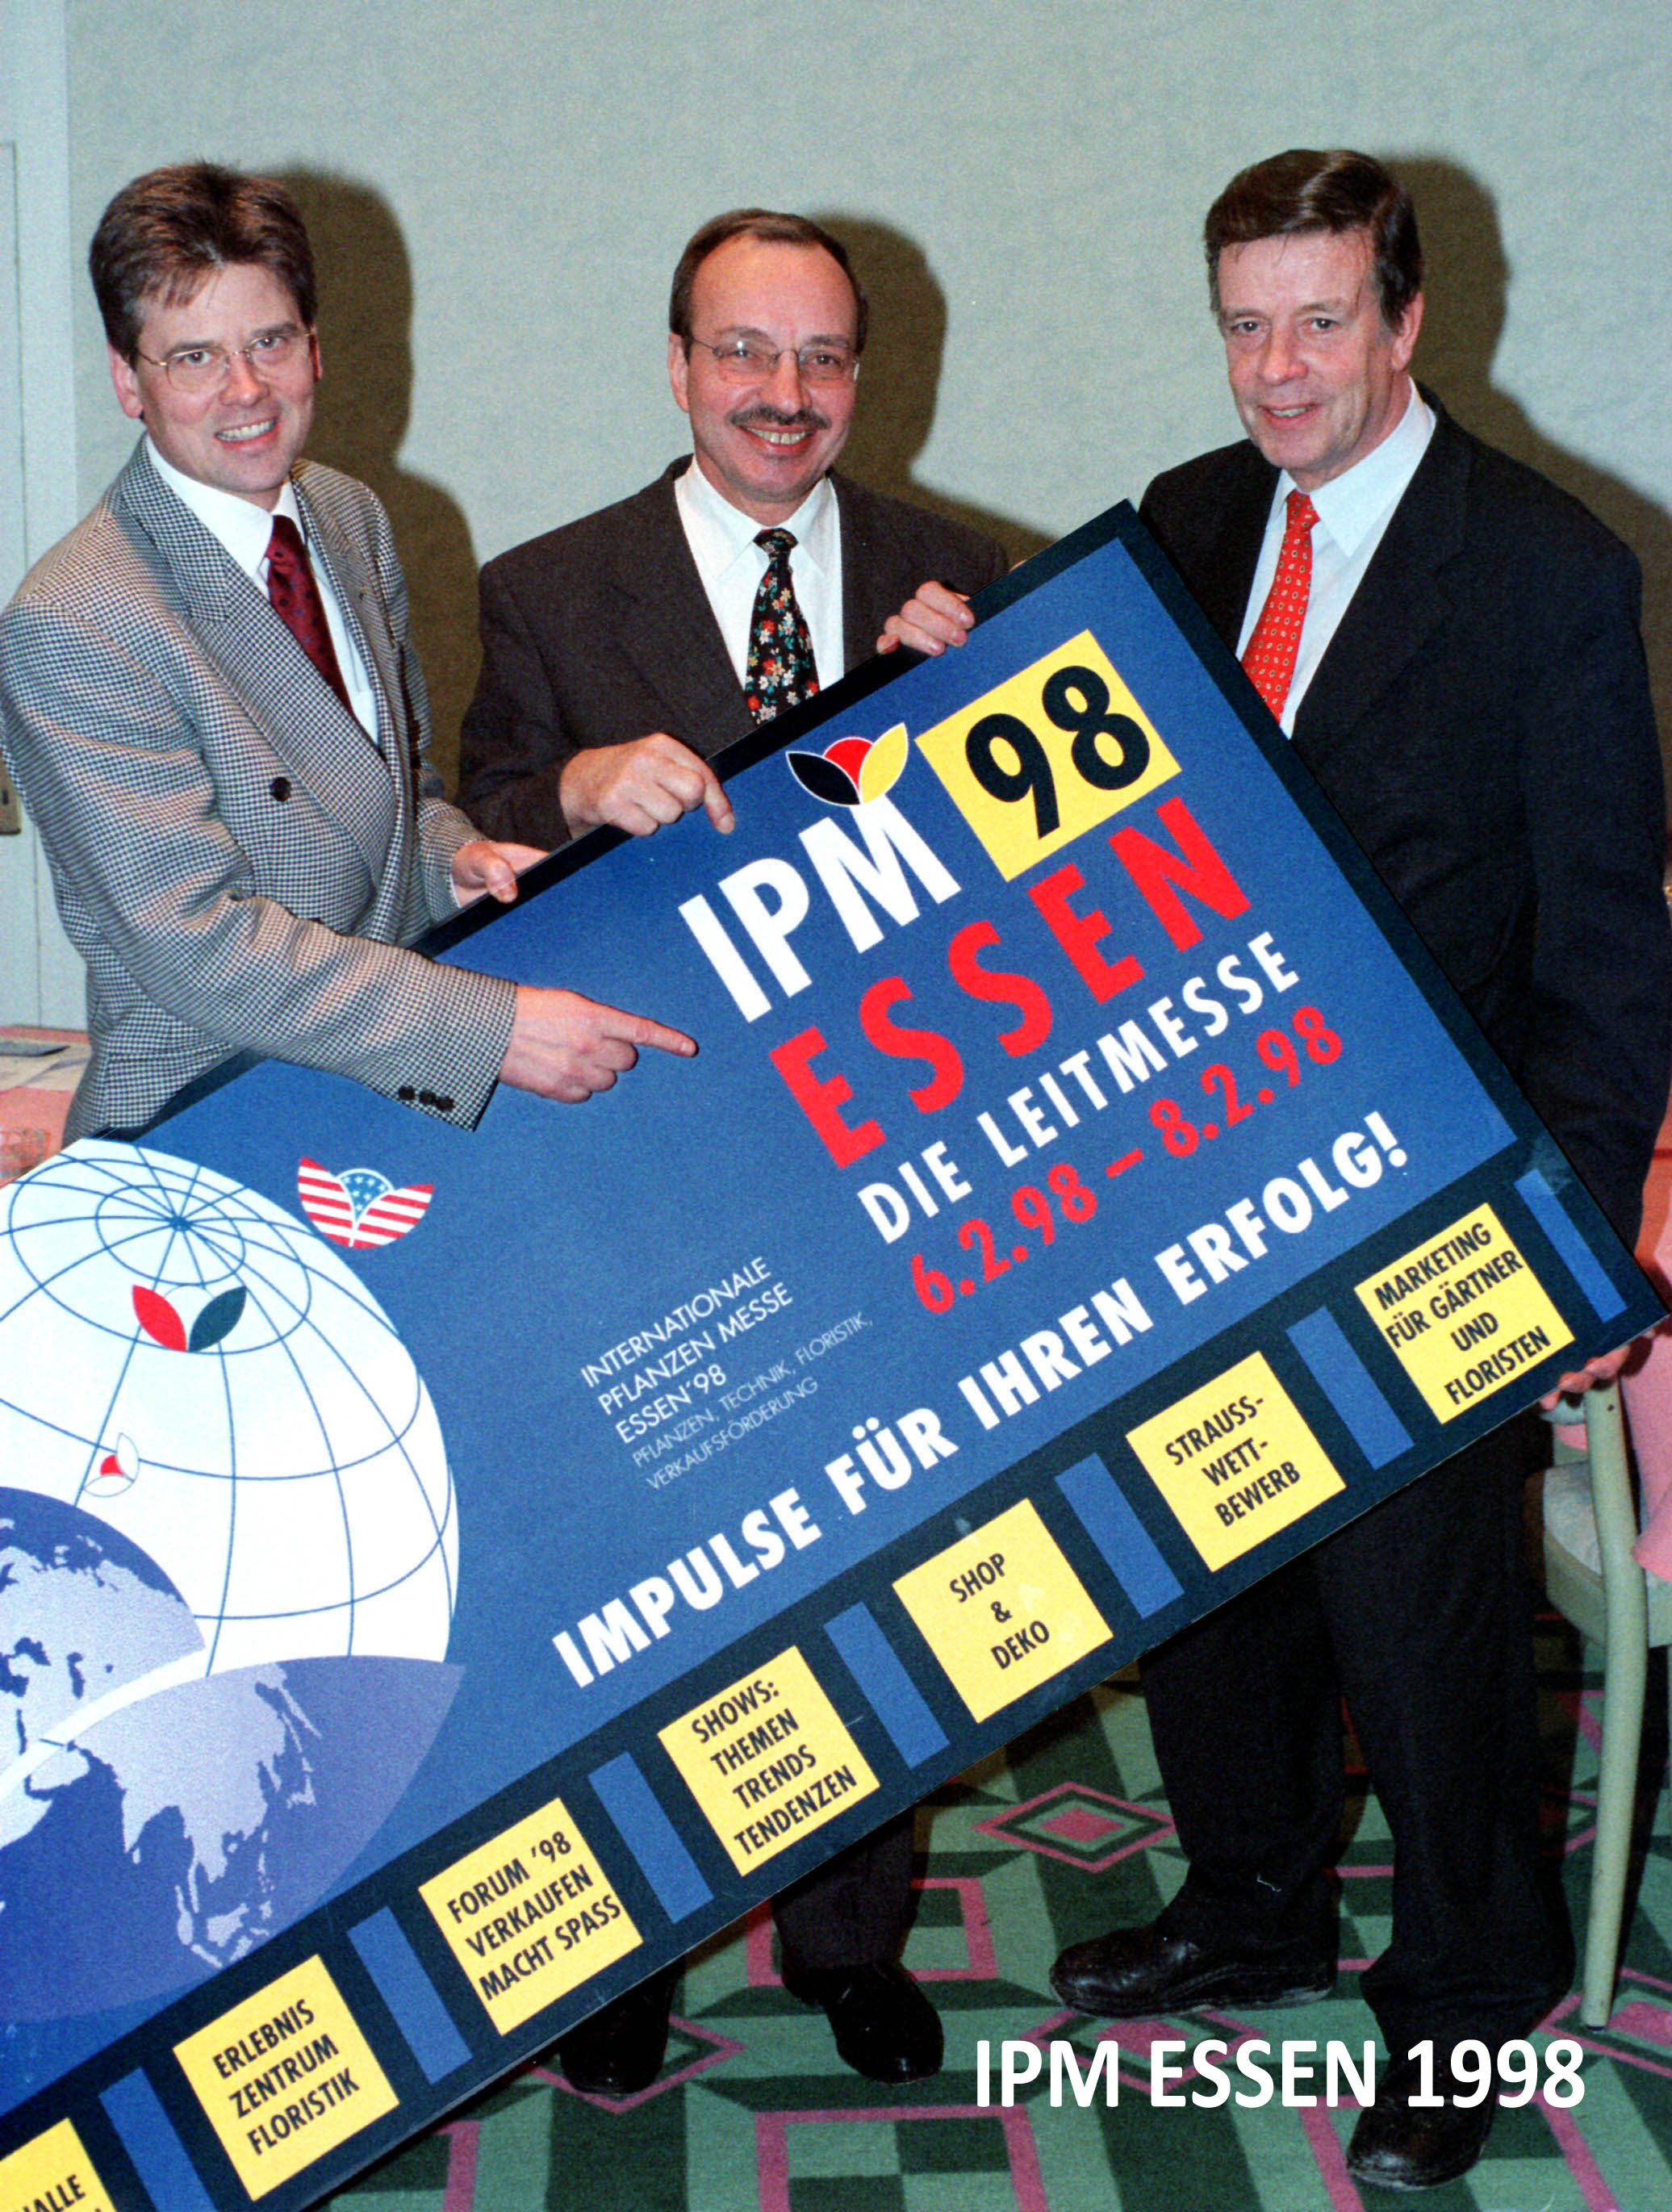 
		IPM ESSEN 1998
	